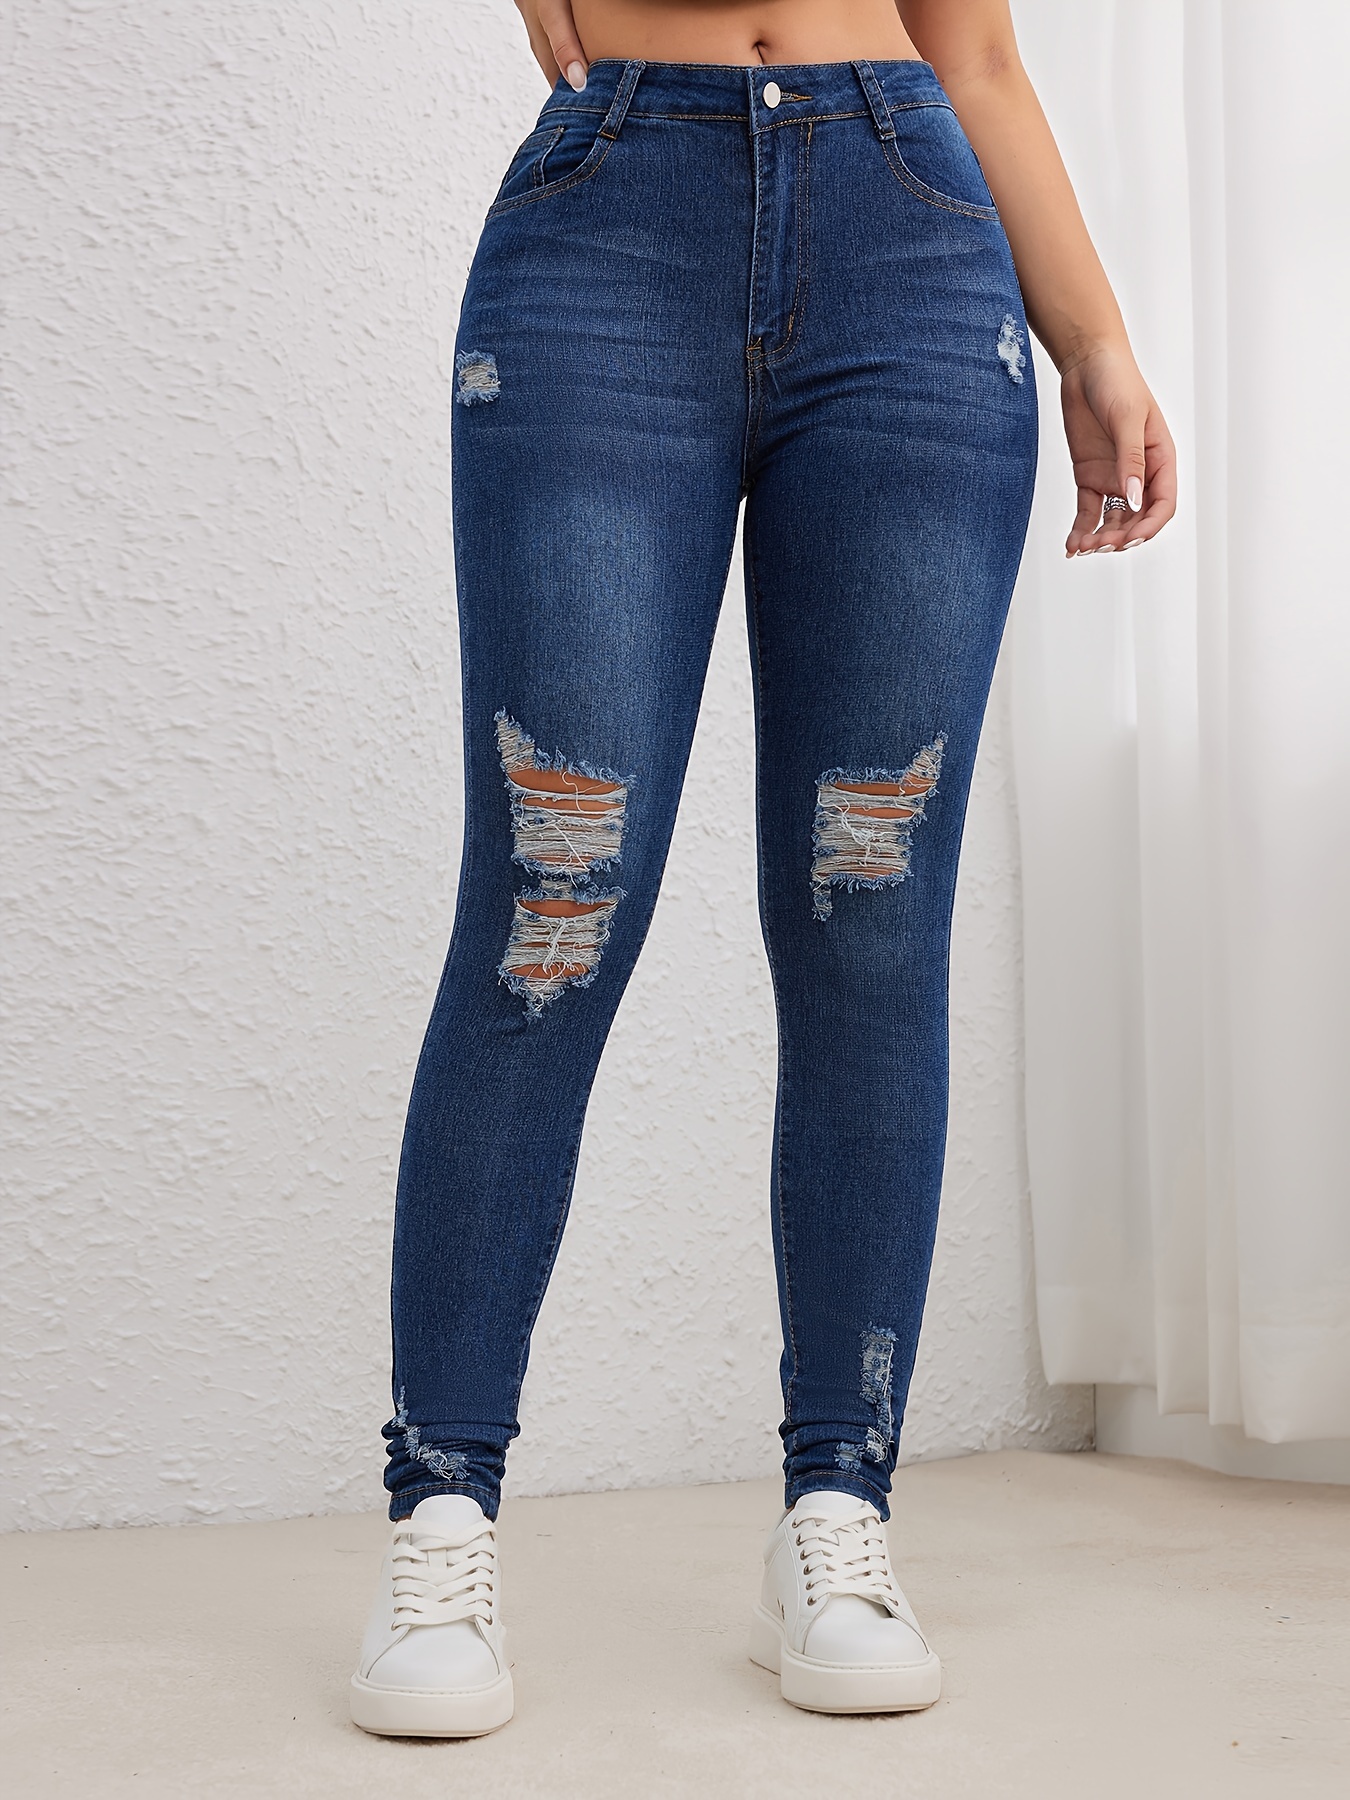 Jeans ajustados para mujer, totalmente moldeados, de talle alto, con  curvas, corte de bota, ajustados, sin cierre, para mujer